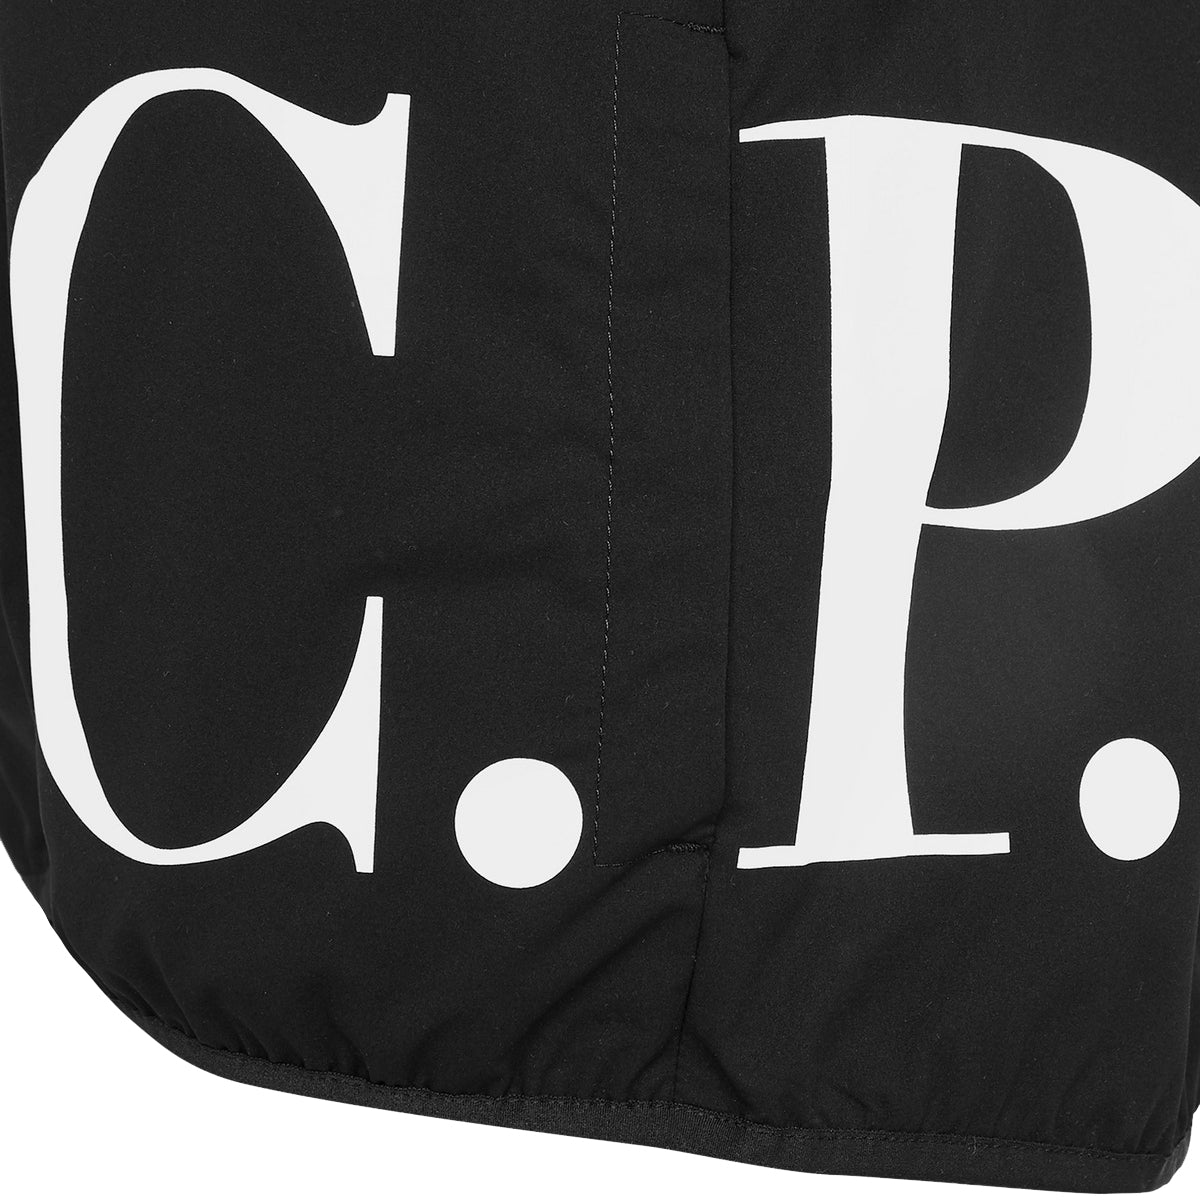 C.P Company Boys Lens Shell Jacket Black